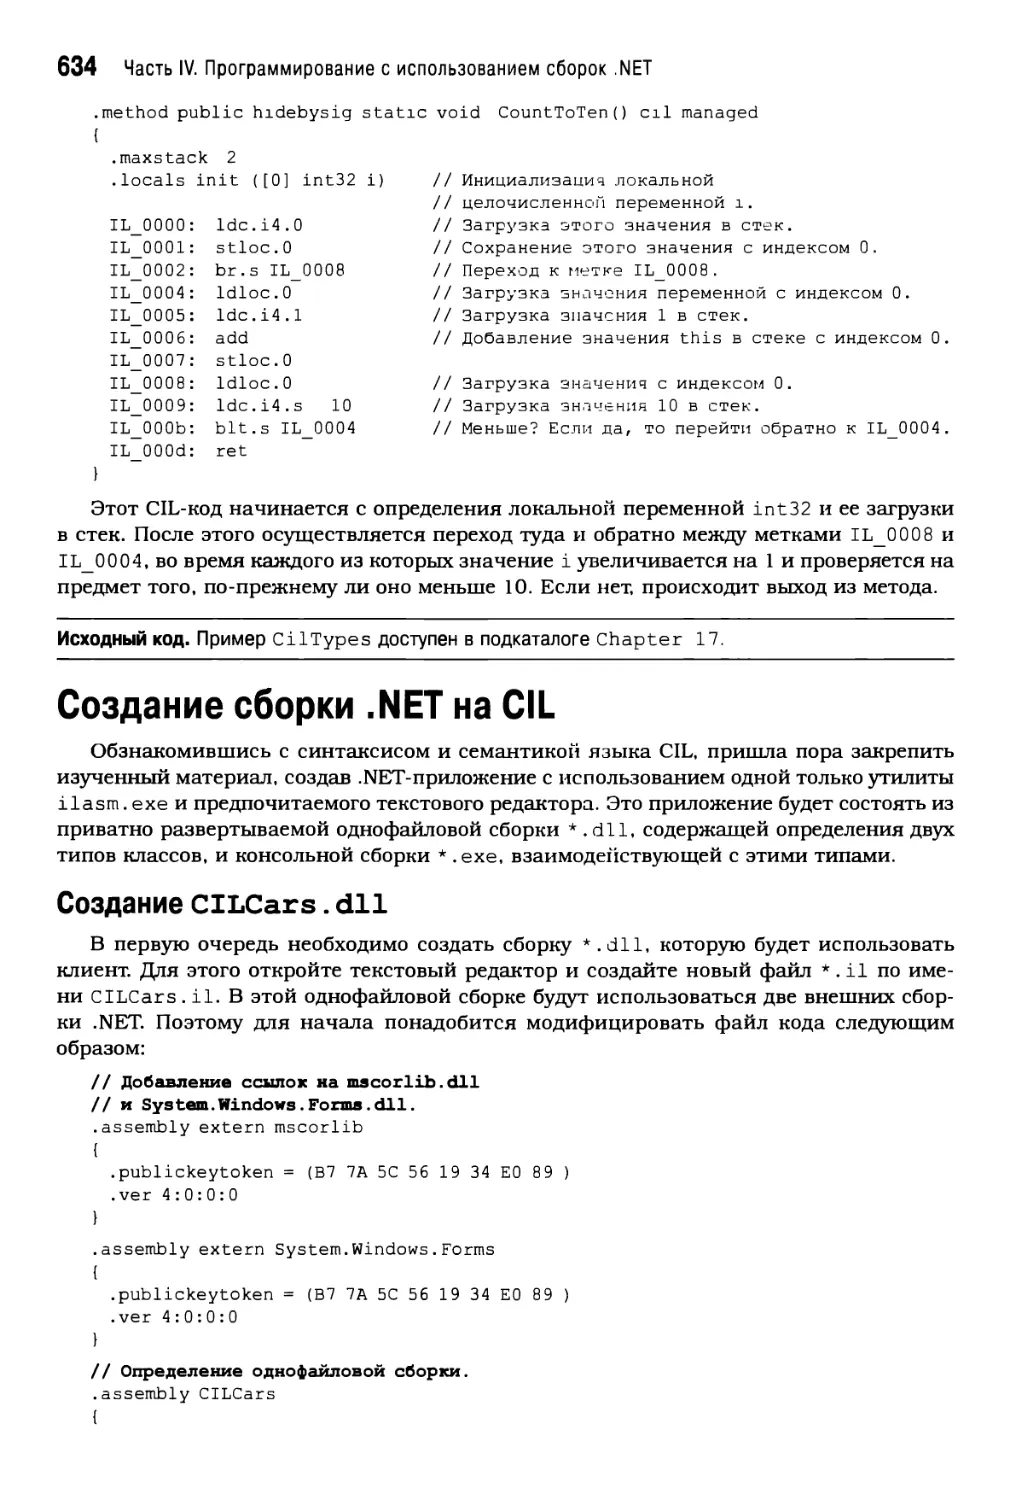 Создание сборки . NET на CIL